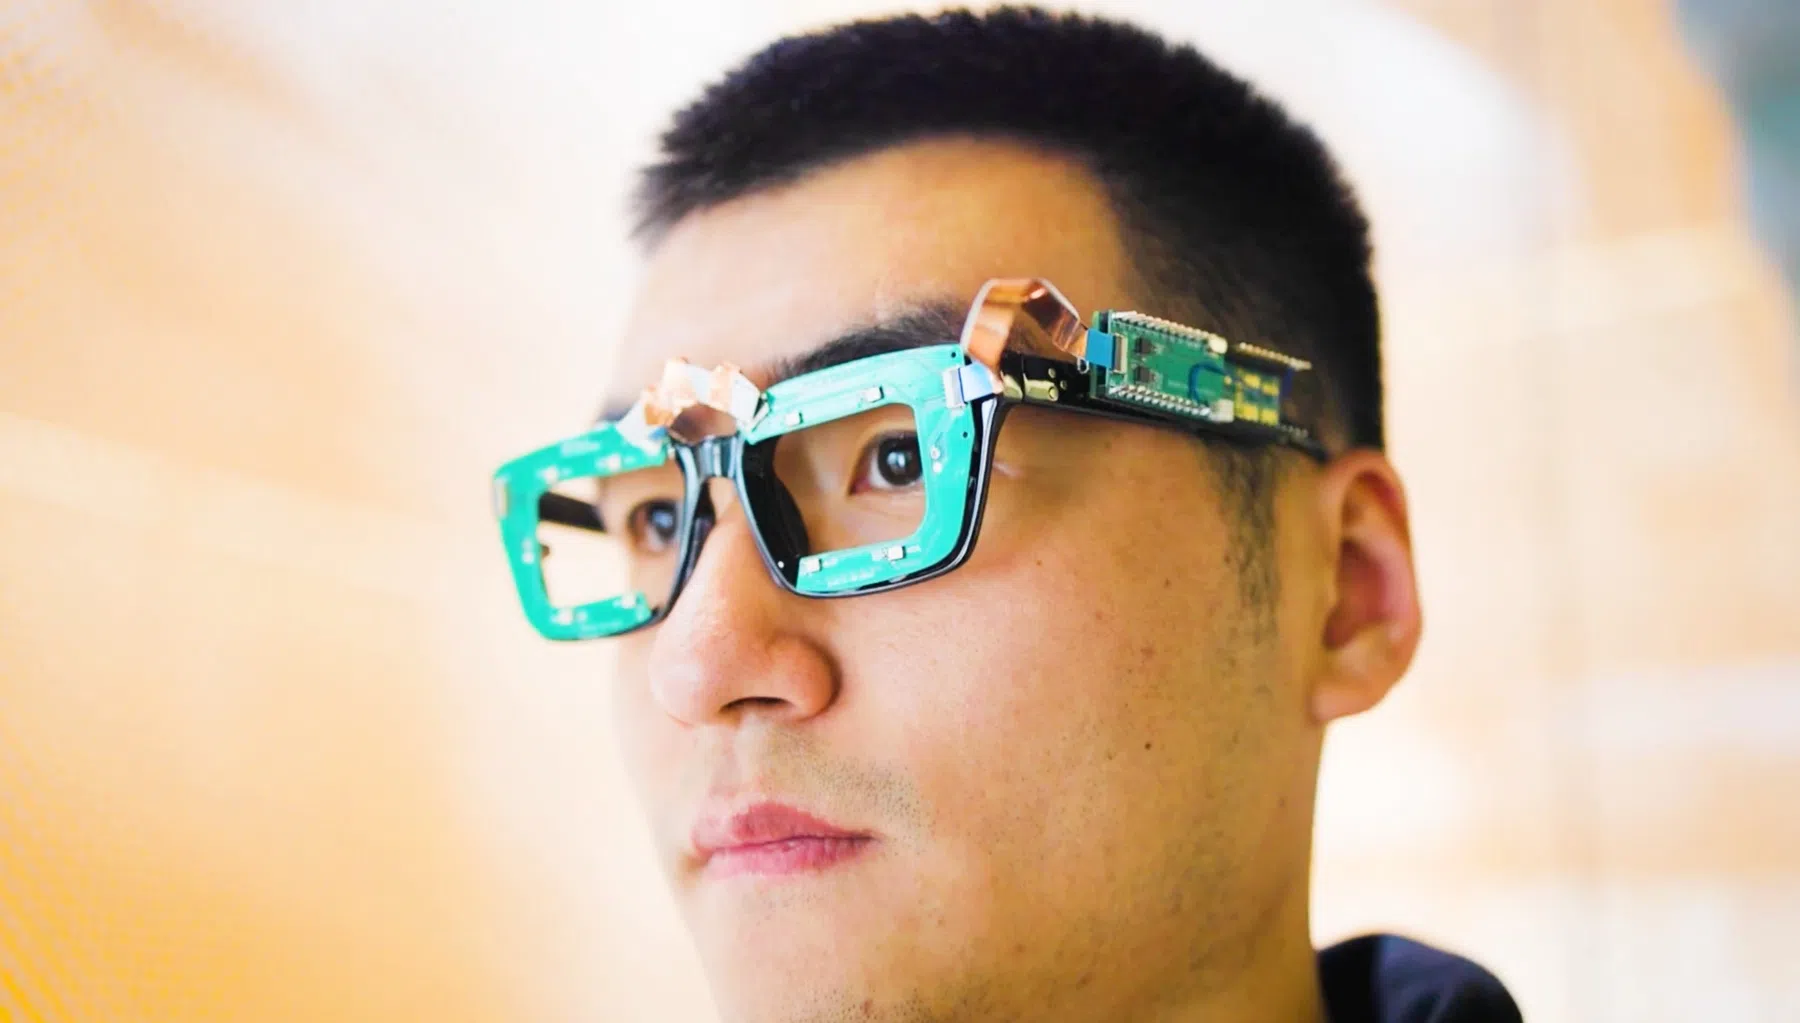 Deze bril volgt je ogen en gezichtsexpressies zónder camera's te gebruiken